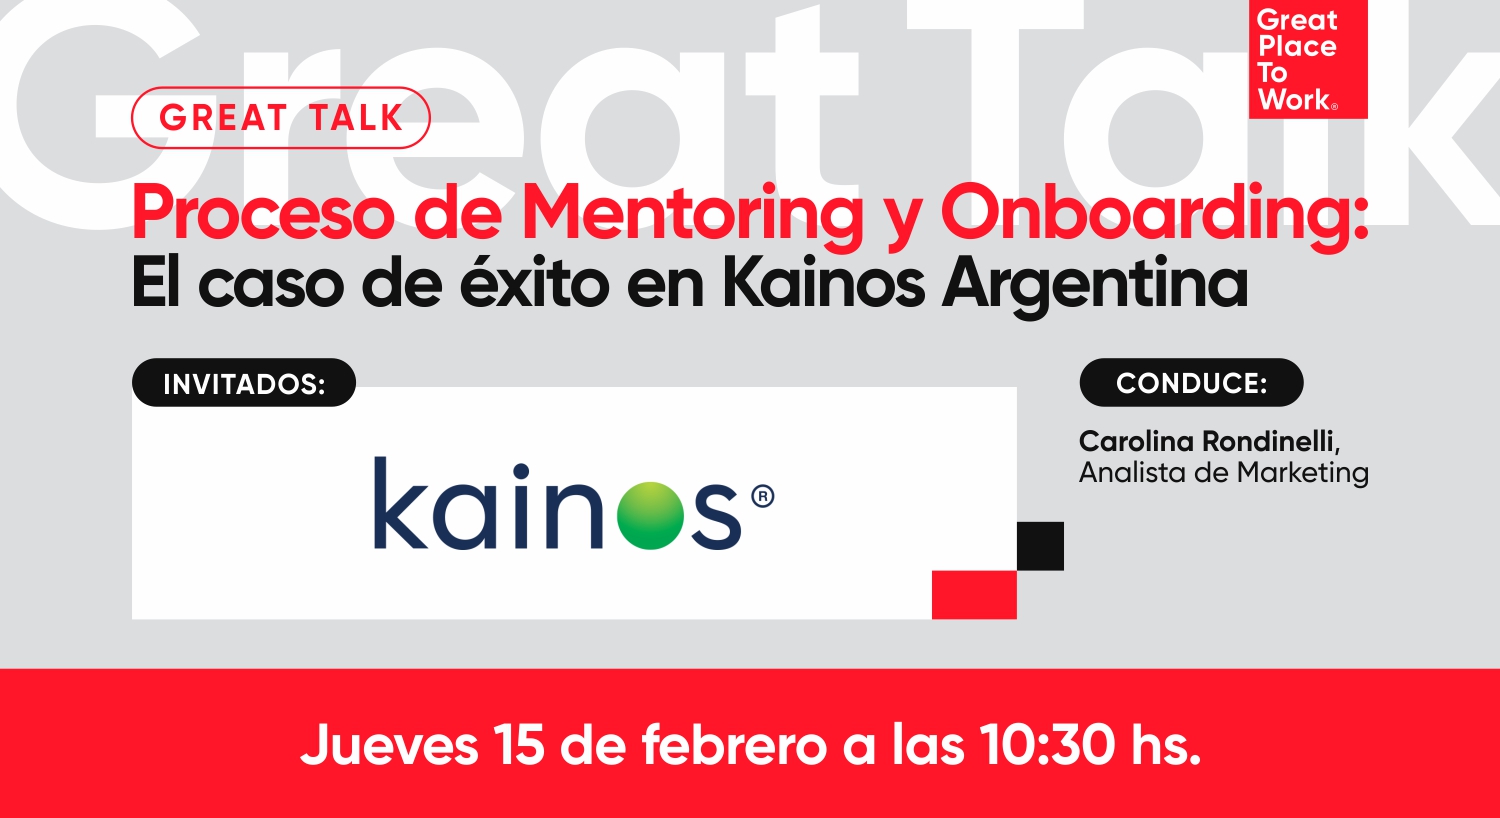 Great Talk | Proceso de Mentoring y Onboarding: El caso de éxito de Kainos Argentina